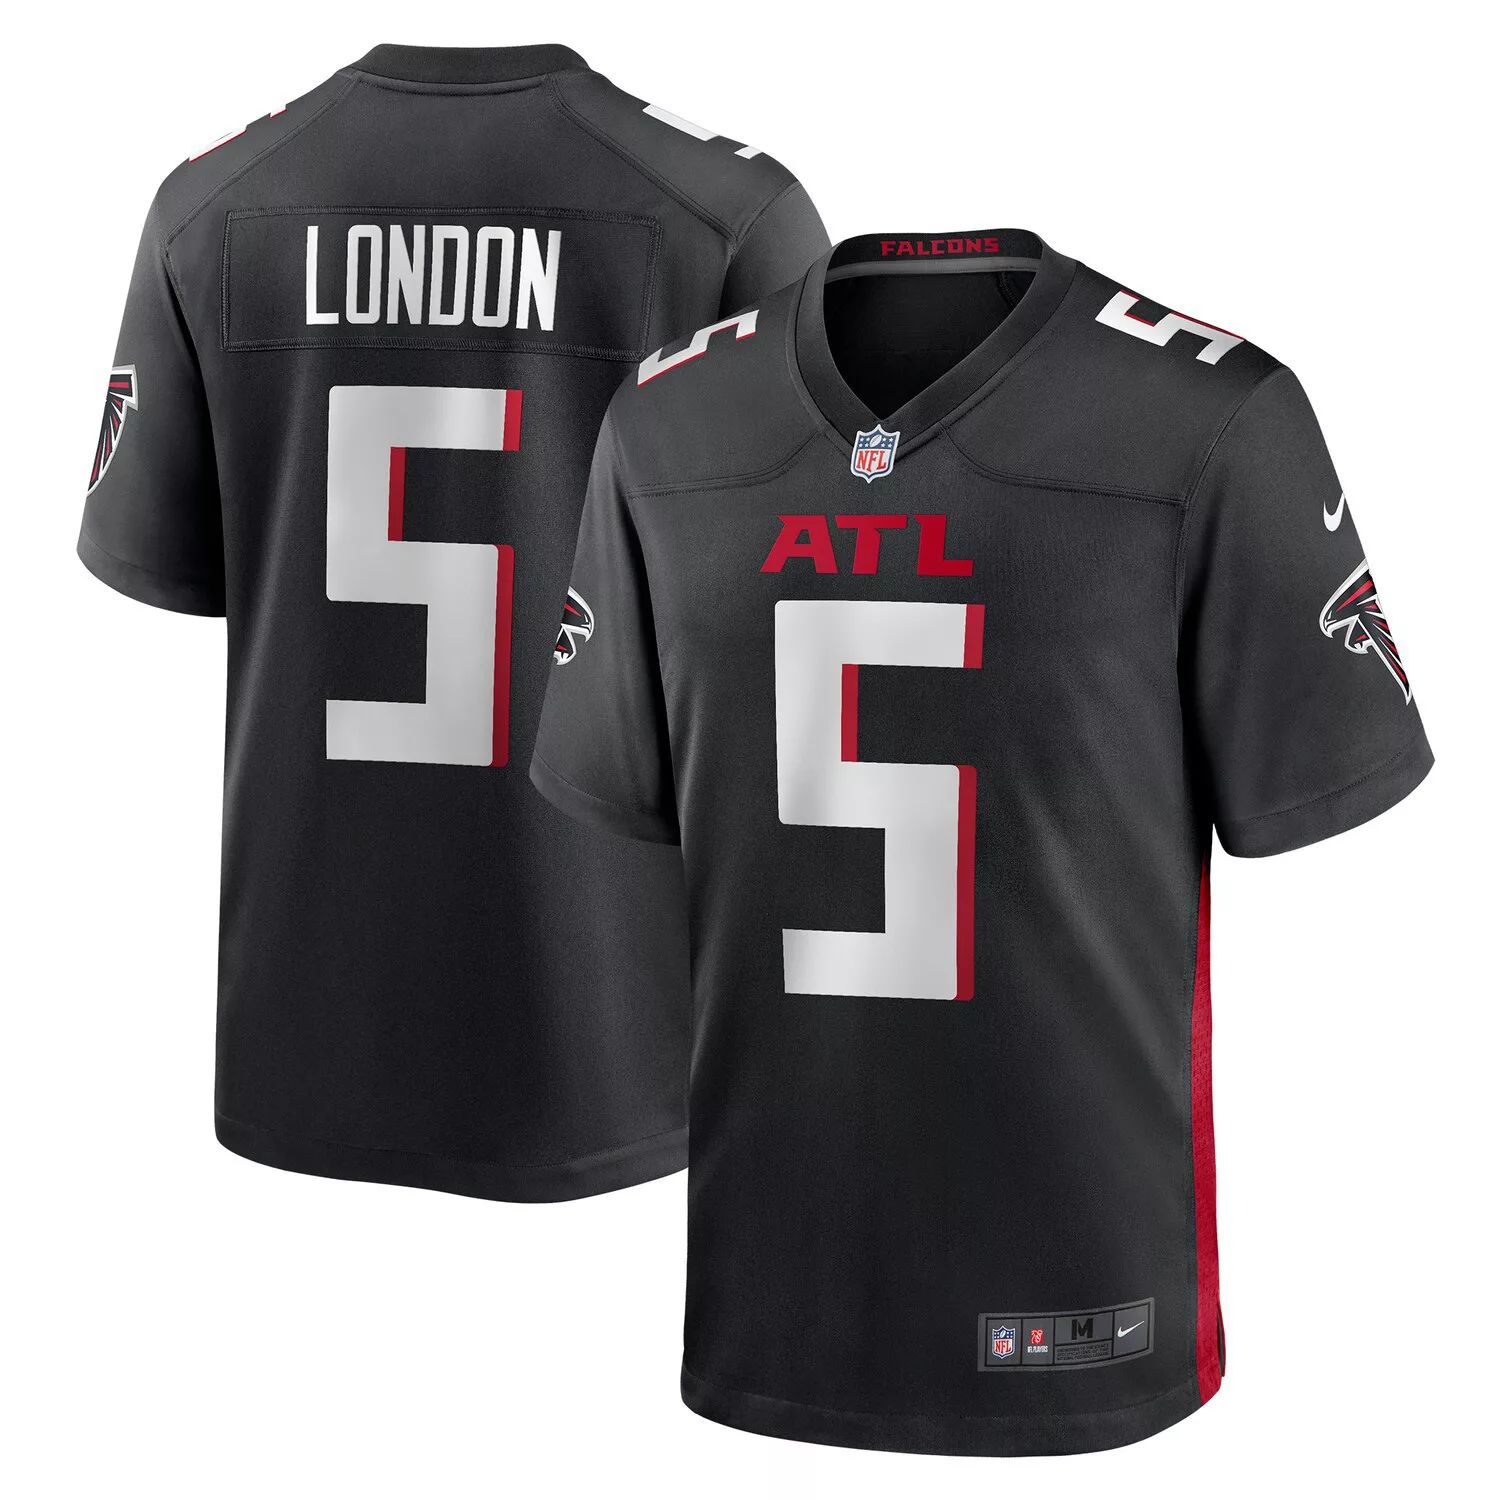 Мужская футболка Drake London Black Atlanta Falcons первого раунда драфта НФЛ 2022 года Nike